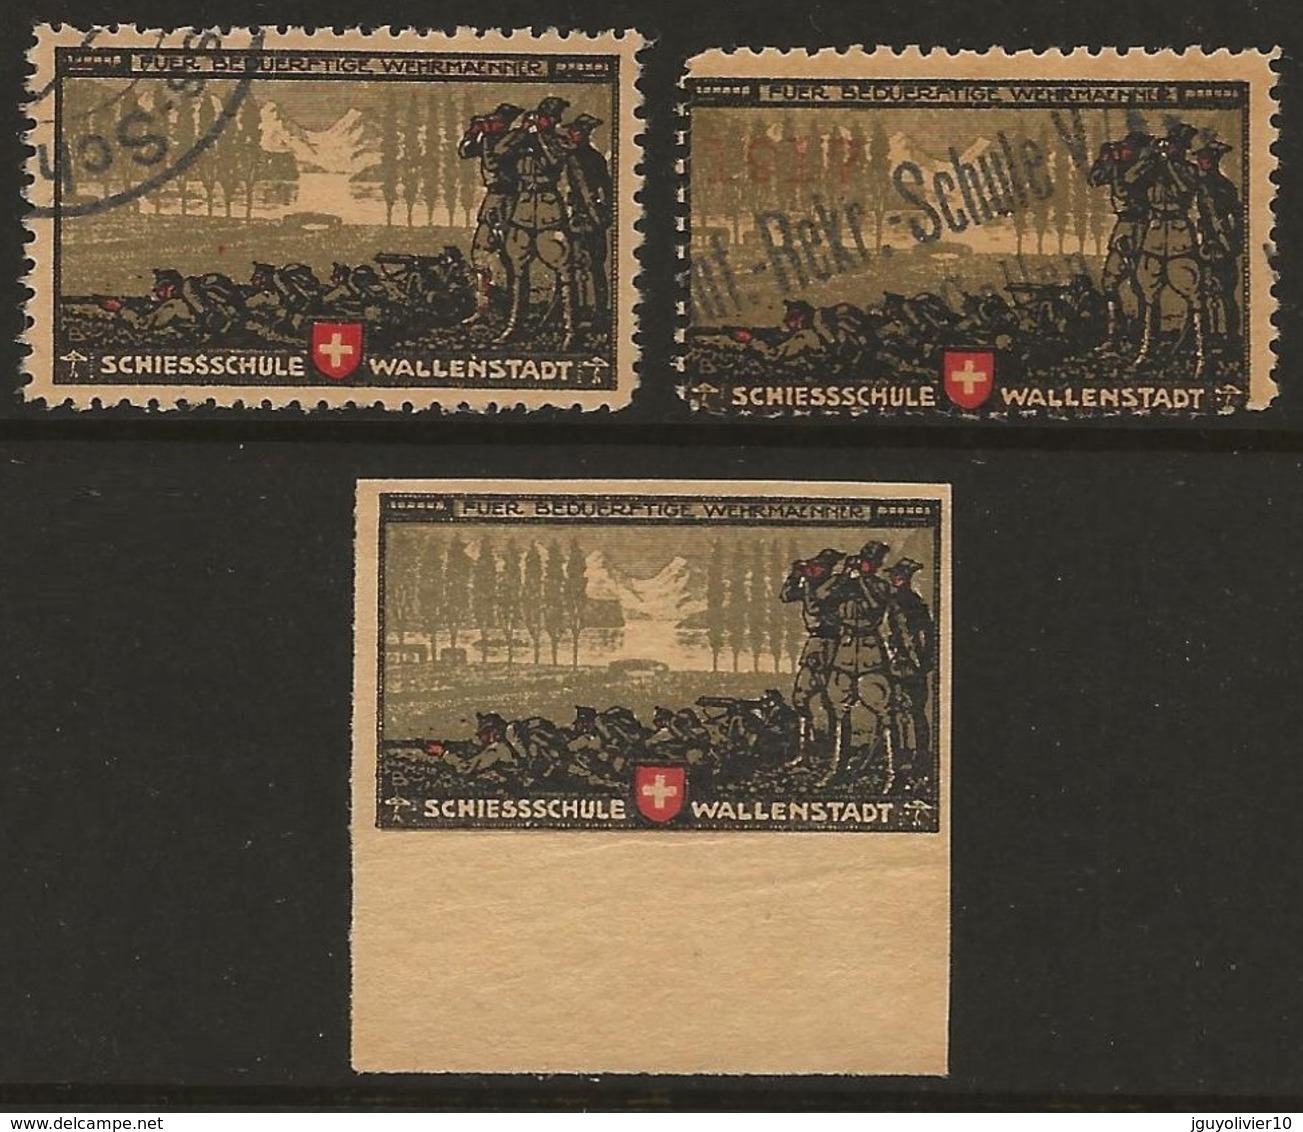 Suisse WWI Vignette Militaire Soldatenmarken VERSCHIEDENES / DIVERS 1914-18 Fine, Small Faults. Nice Group - Vignetten